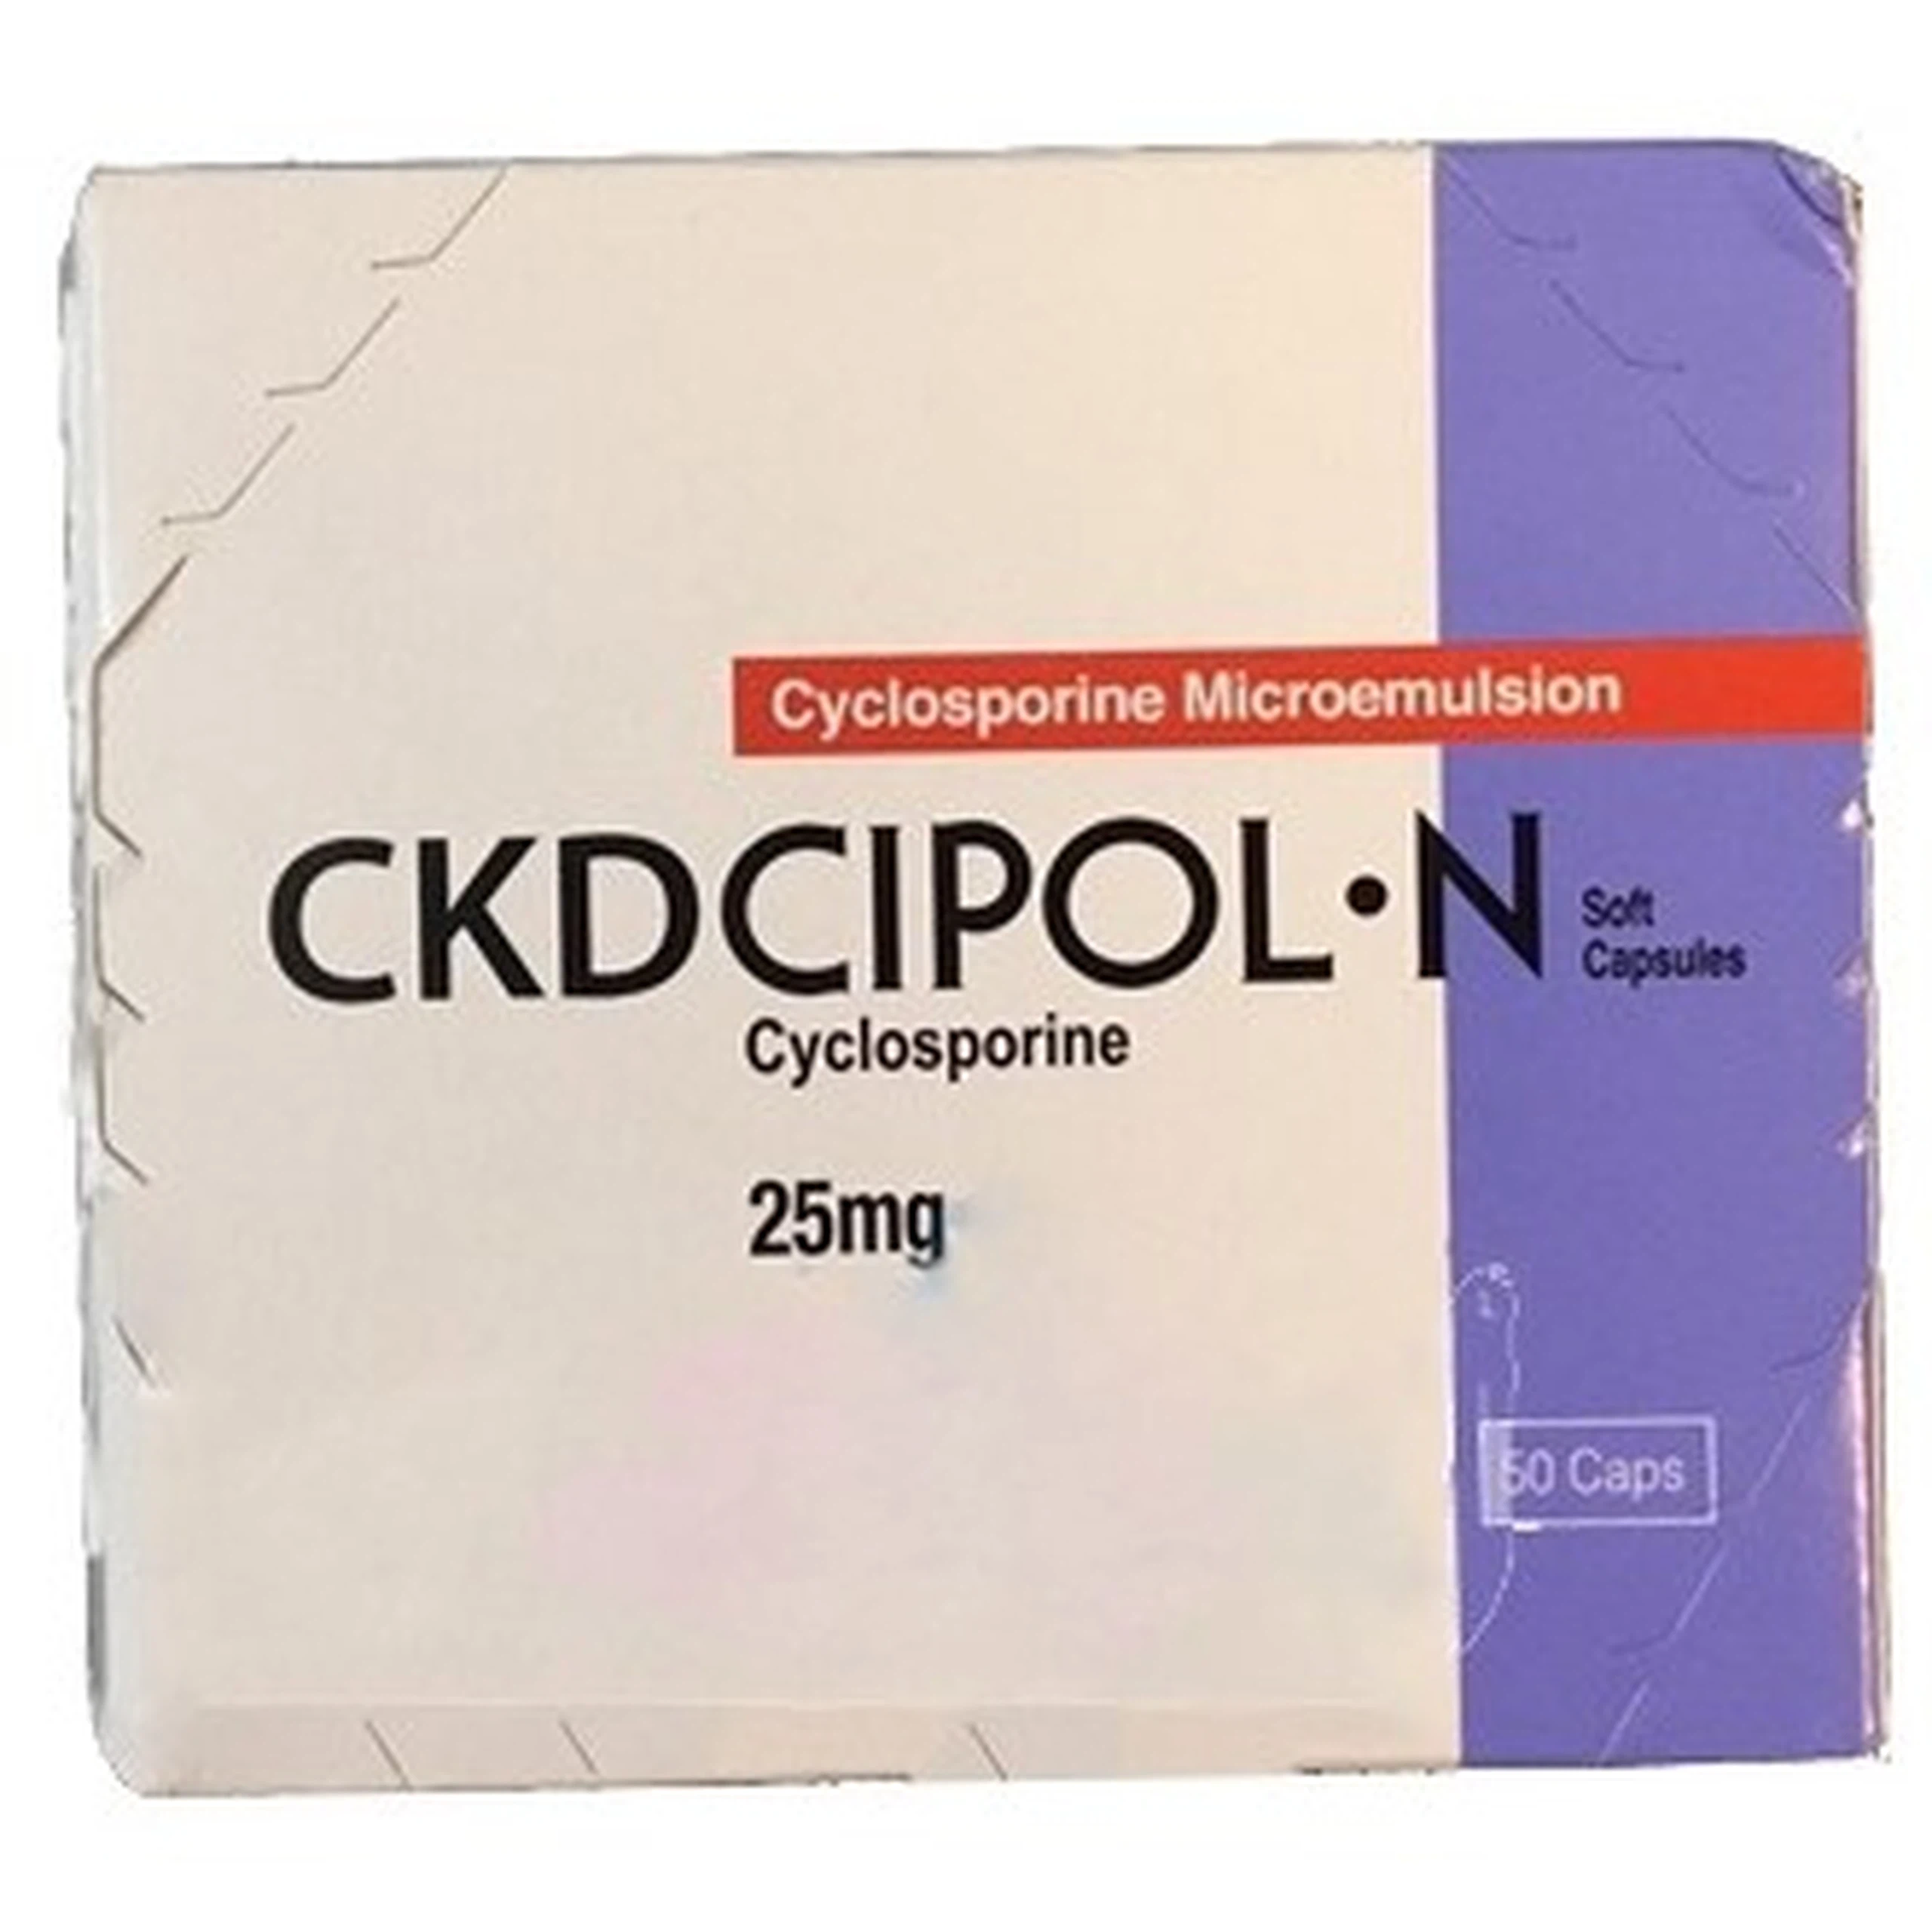 Thuốc Ckdcipol-N 25mg Suheung ngăn đào thải trong ghép tạng (10 vỉ x 5 viên)